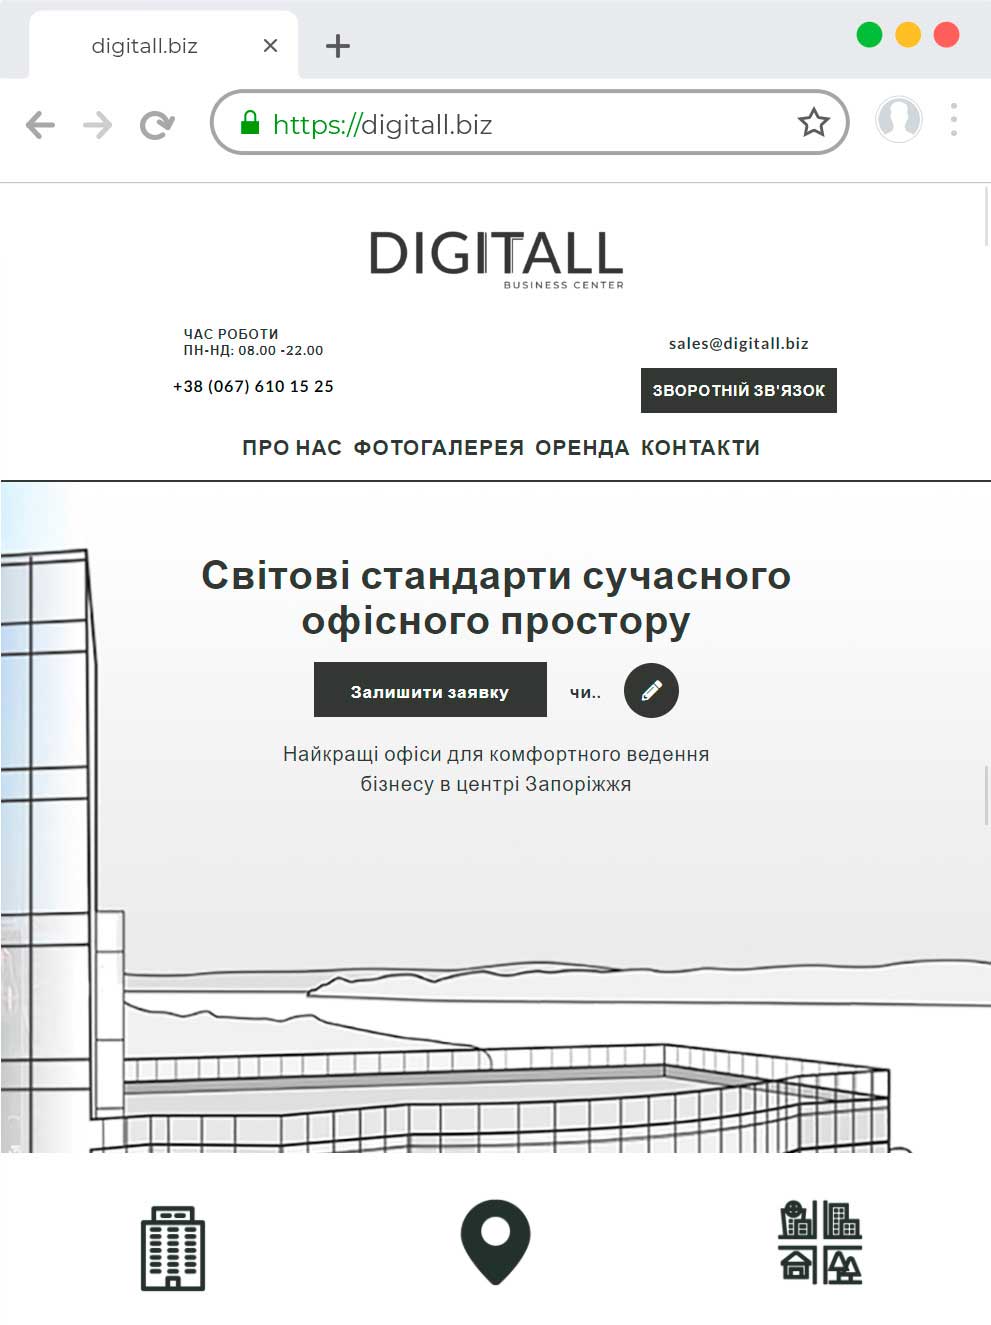 Разработка сайта для торгового центра digitall.biz